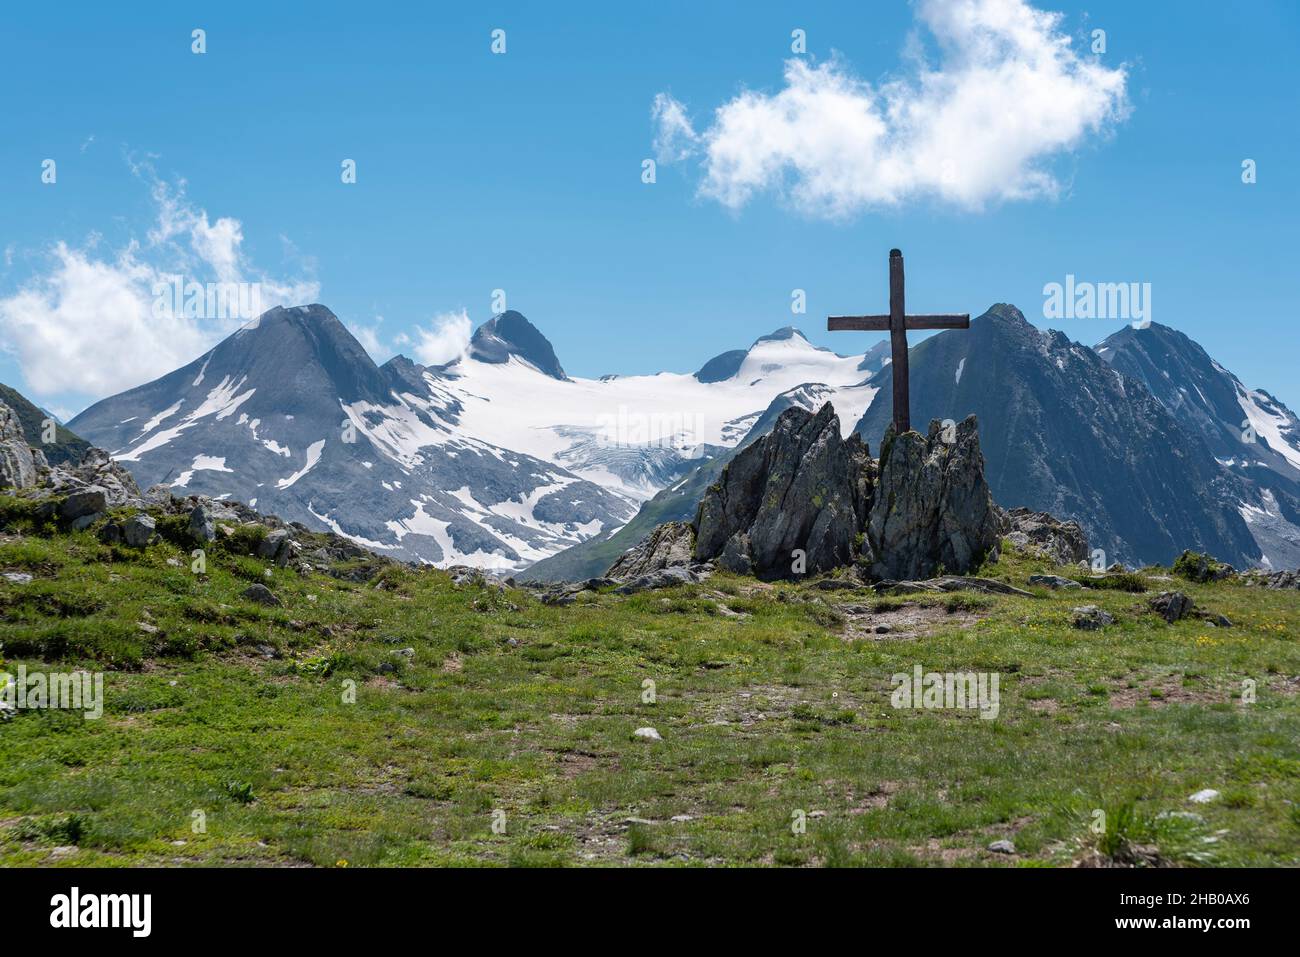 Nufenen cross in alpine landscape by the Nufenen Pass, Ulrichen, Valais, Switzerland, Europe Stock Photo